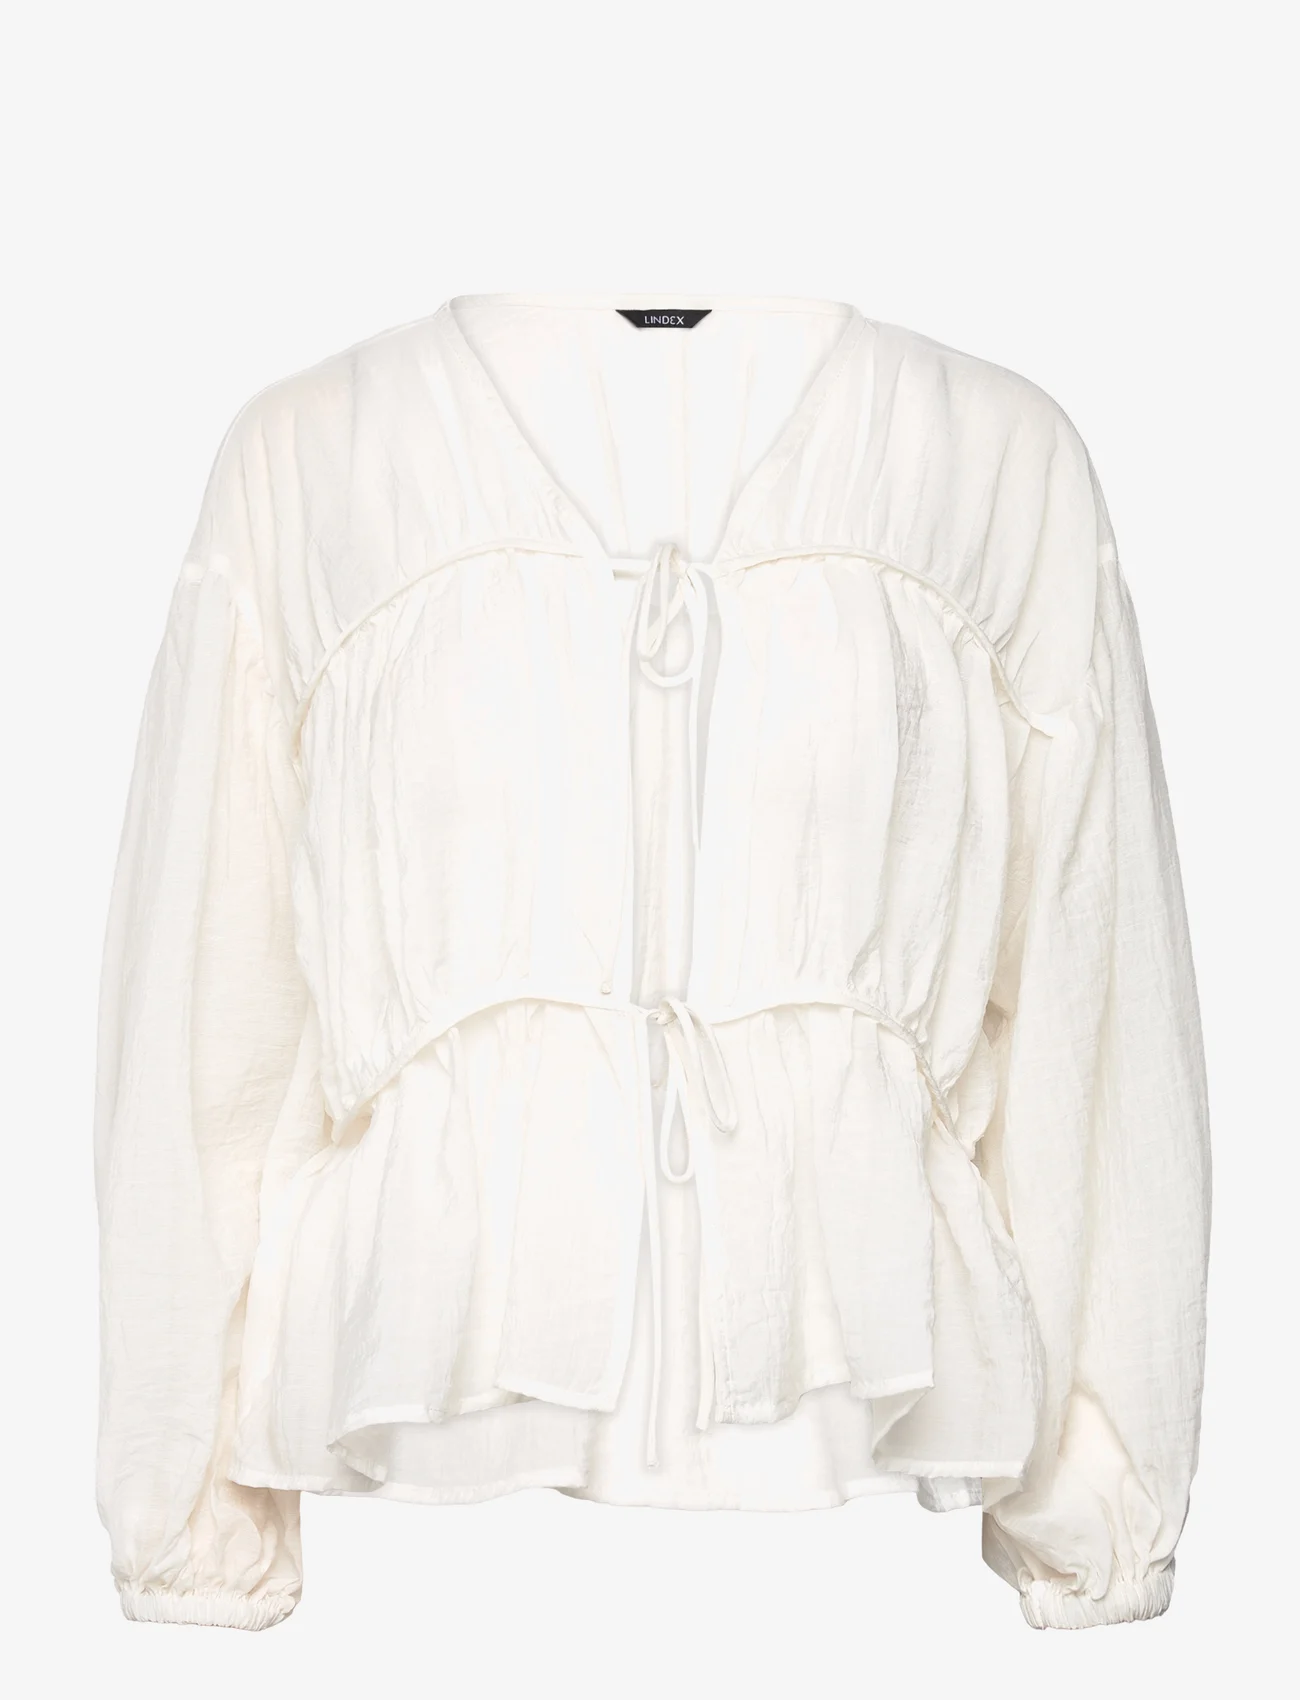 Lindex - Blouse Dagmar - long-sleeved blouses - light white - 0